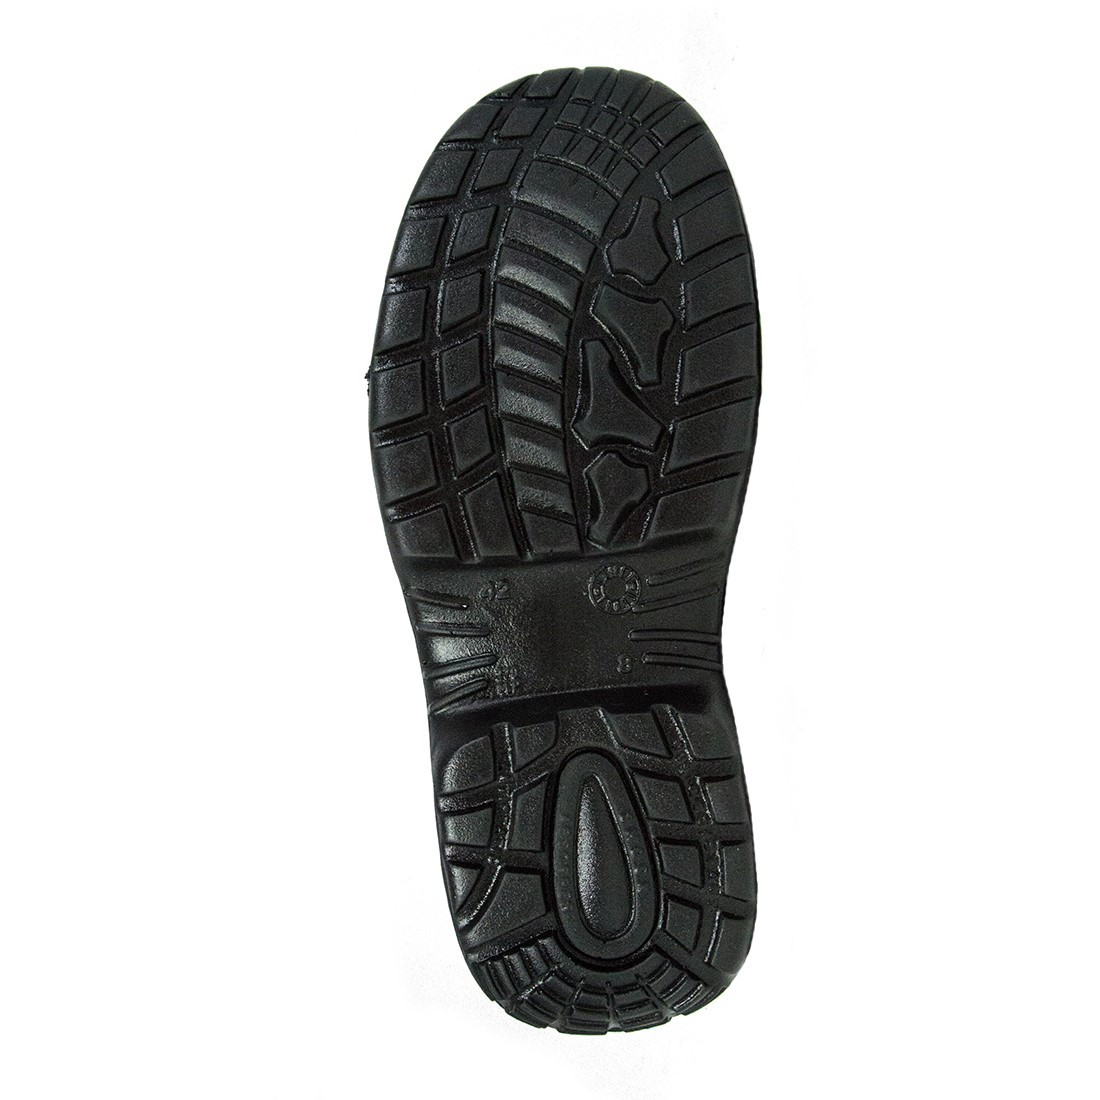 Pantofi Paddington S1P SRC - Incaltaminte de protectie | Bocanci, Pantofi, Sandale, Cizme